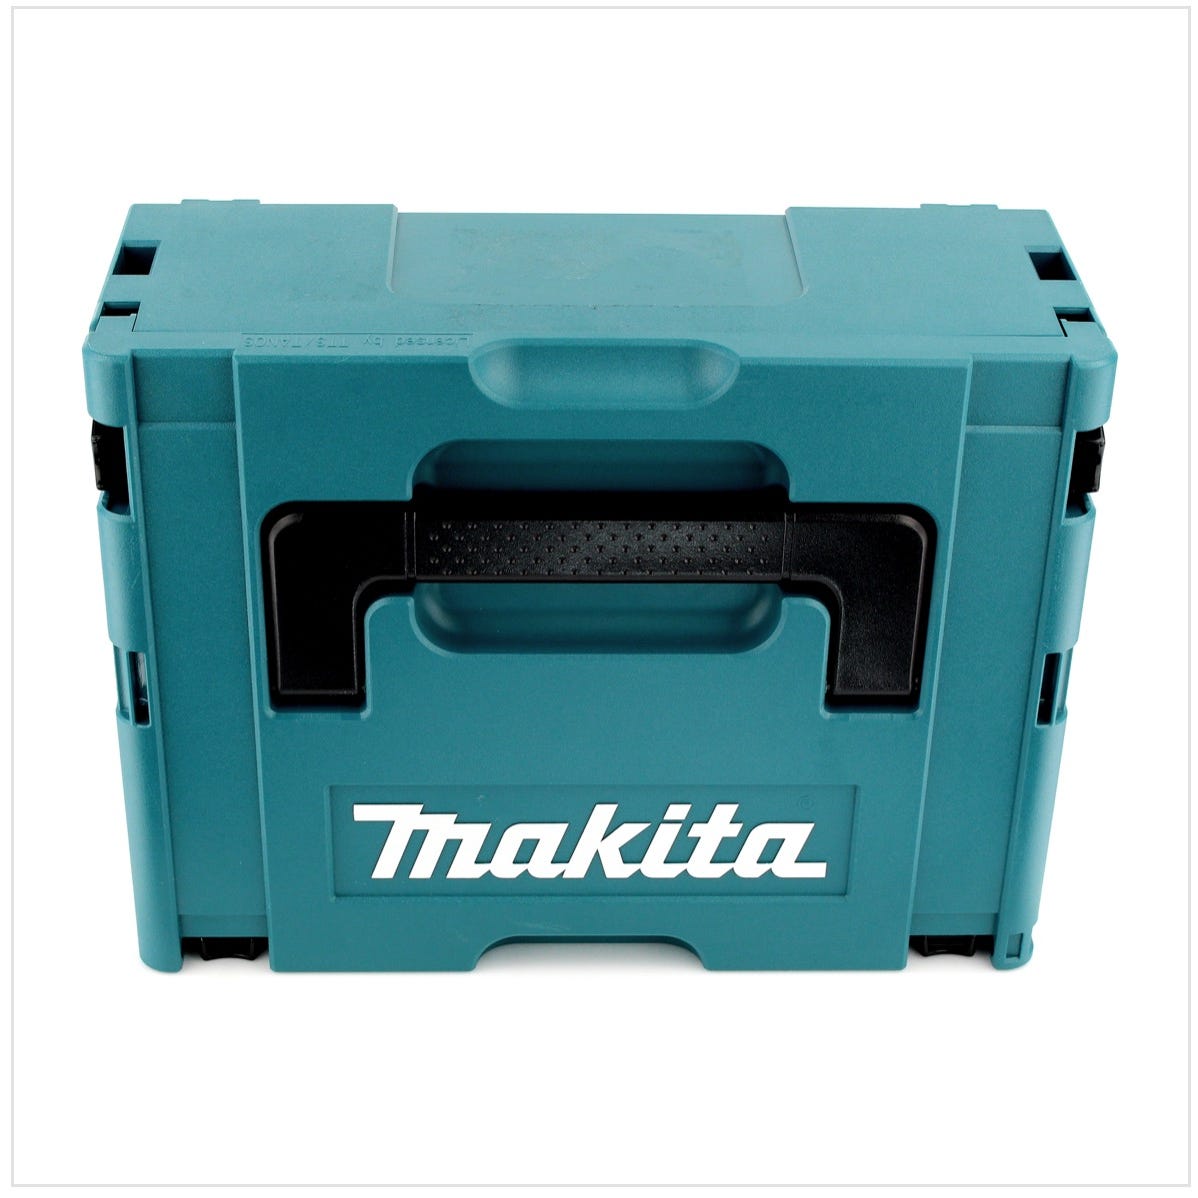 Makita DJV 180 T1J Scie sauteuse sans fil 18V + 1x Batterie 5.0Ah + Makpac - sans chargeur 2